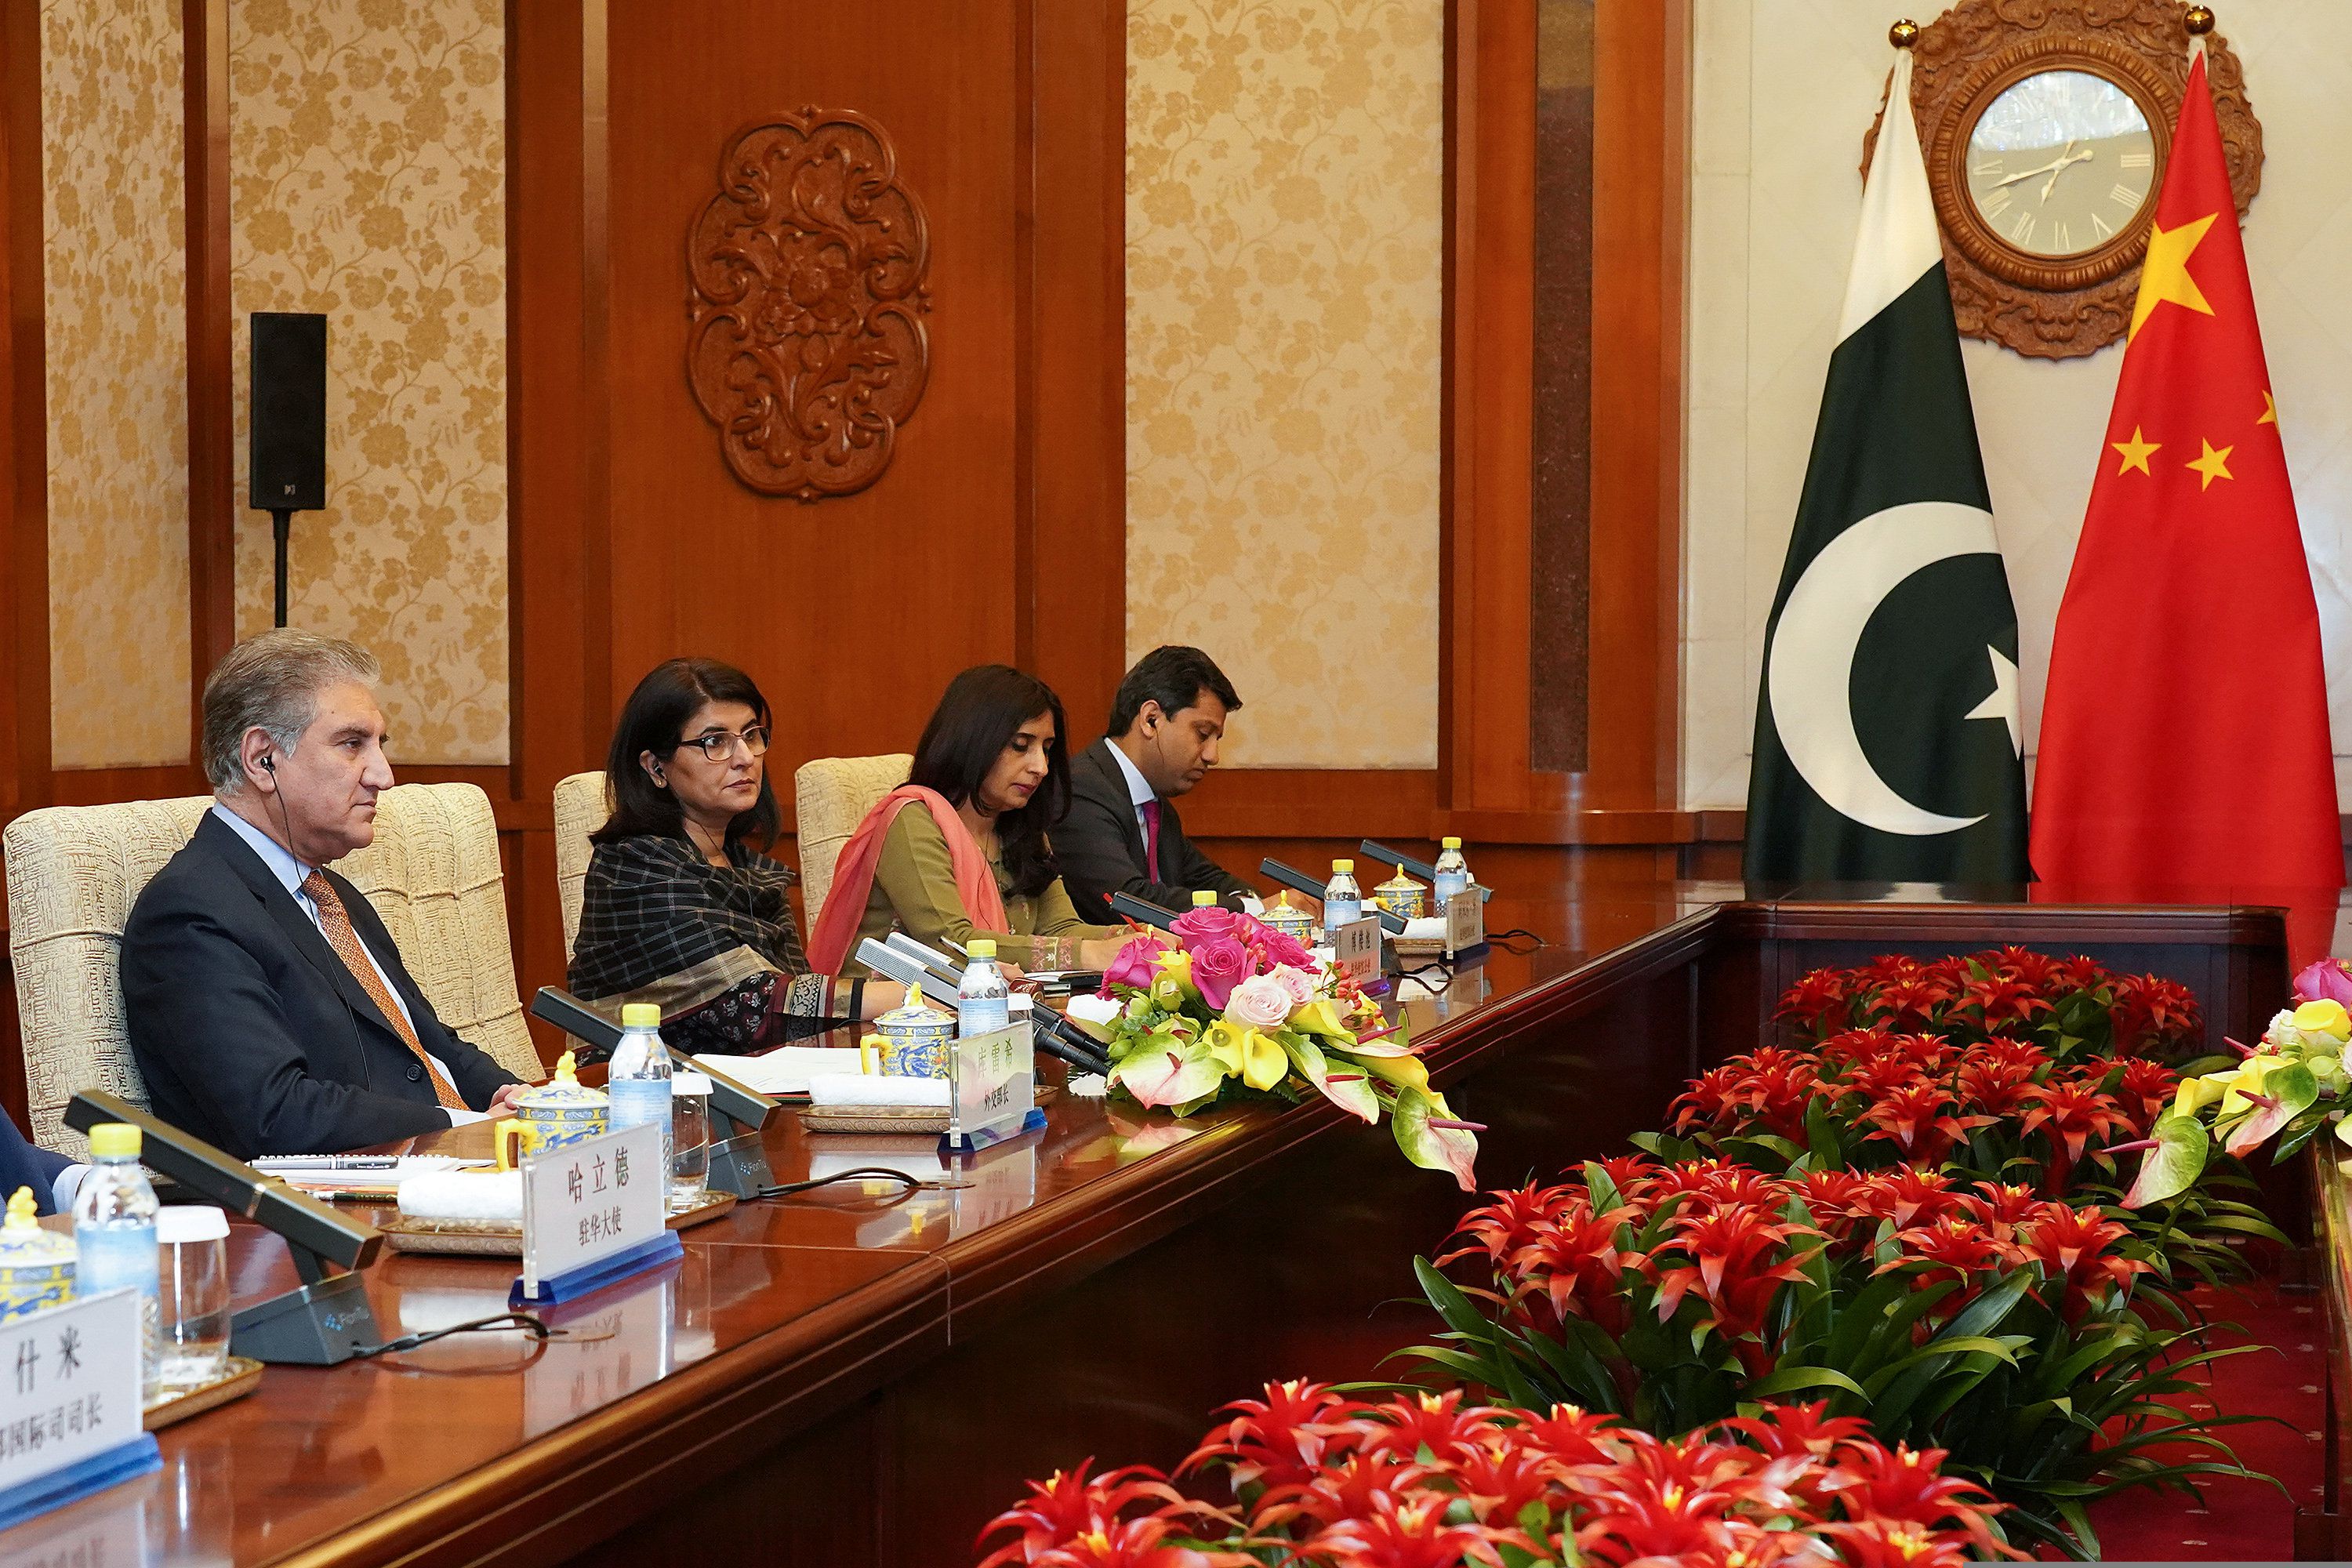 El ministro paquistaní de Asuntos Exteriores, Shah Mehmood Qureshi, asiste a una reunión con el ministro chino de Asuntos Exteriores, Wang Yi (Andrea Verdelli/REUTERS)